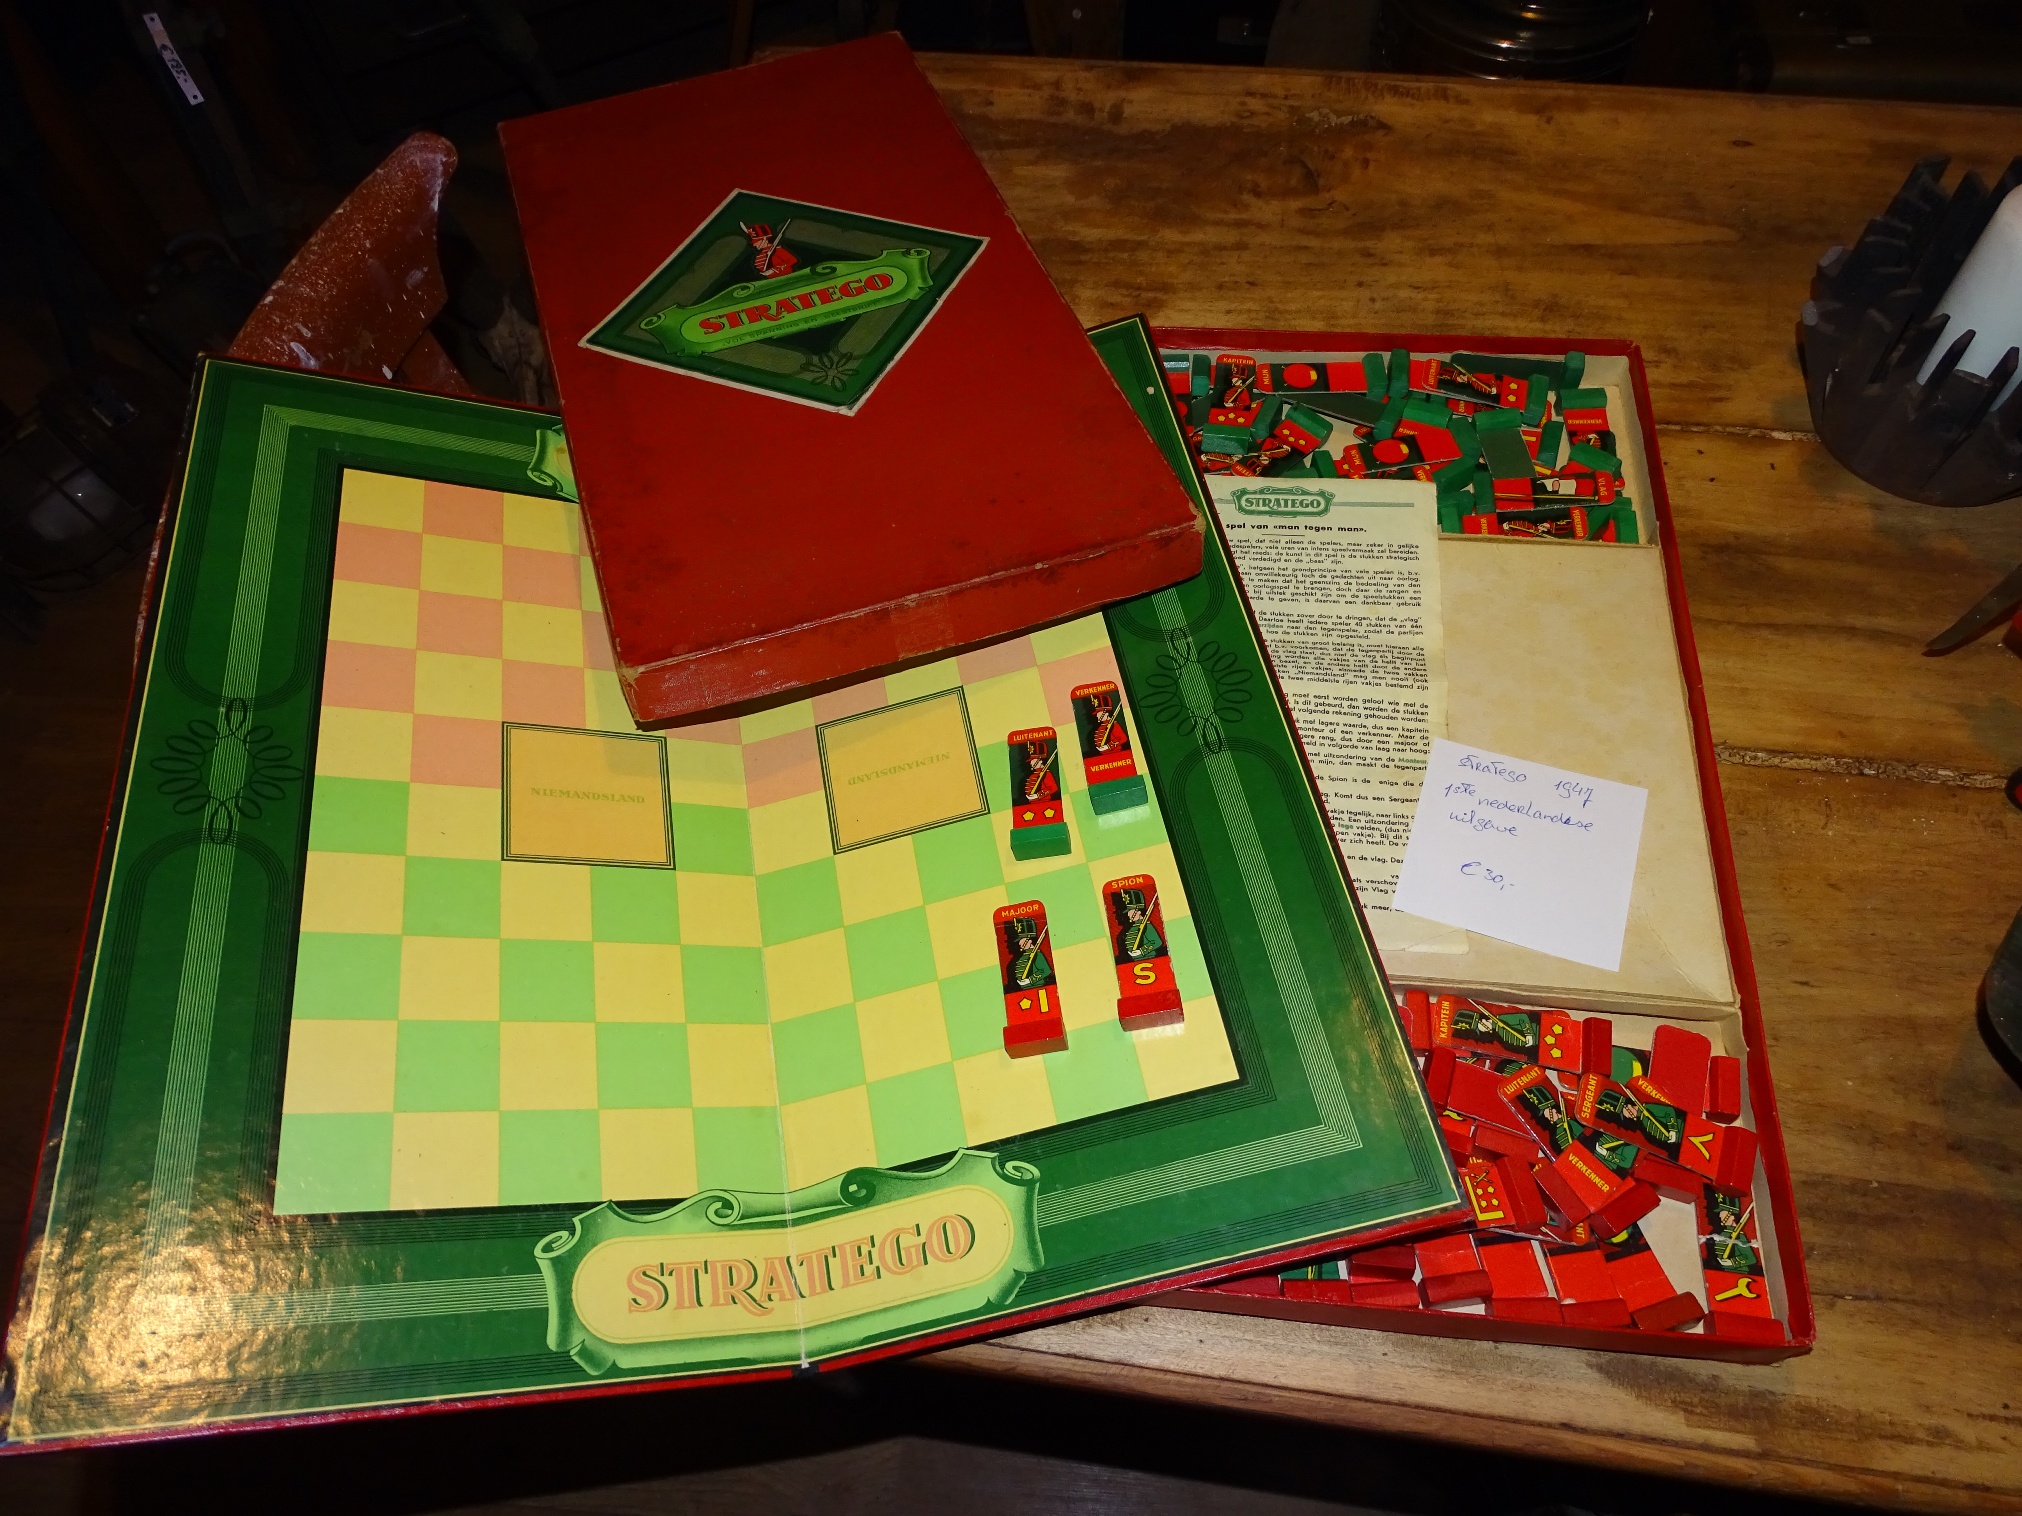 eerste nederlandse uitgave stratego spel 1947 - Brocante Vreemde Eend